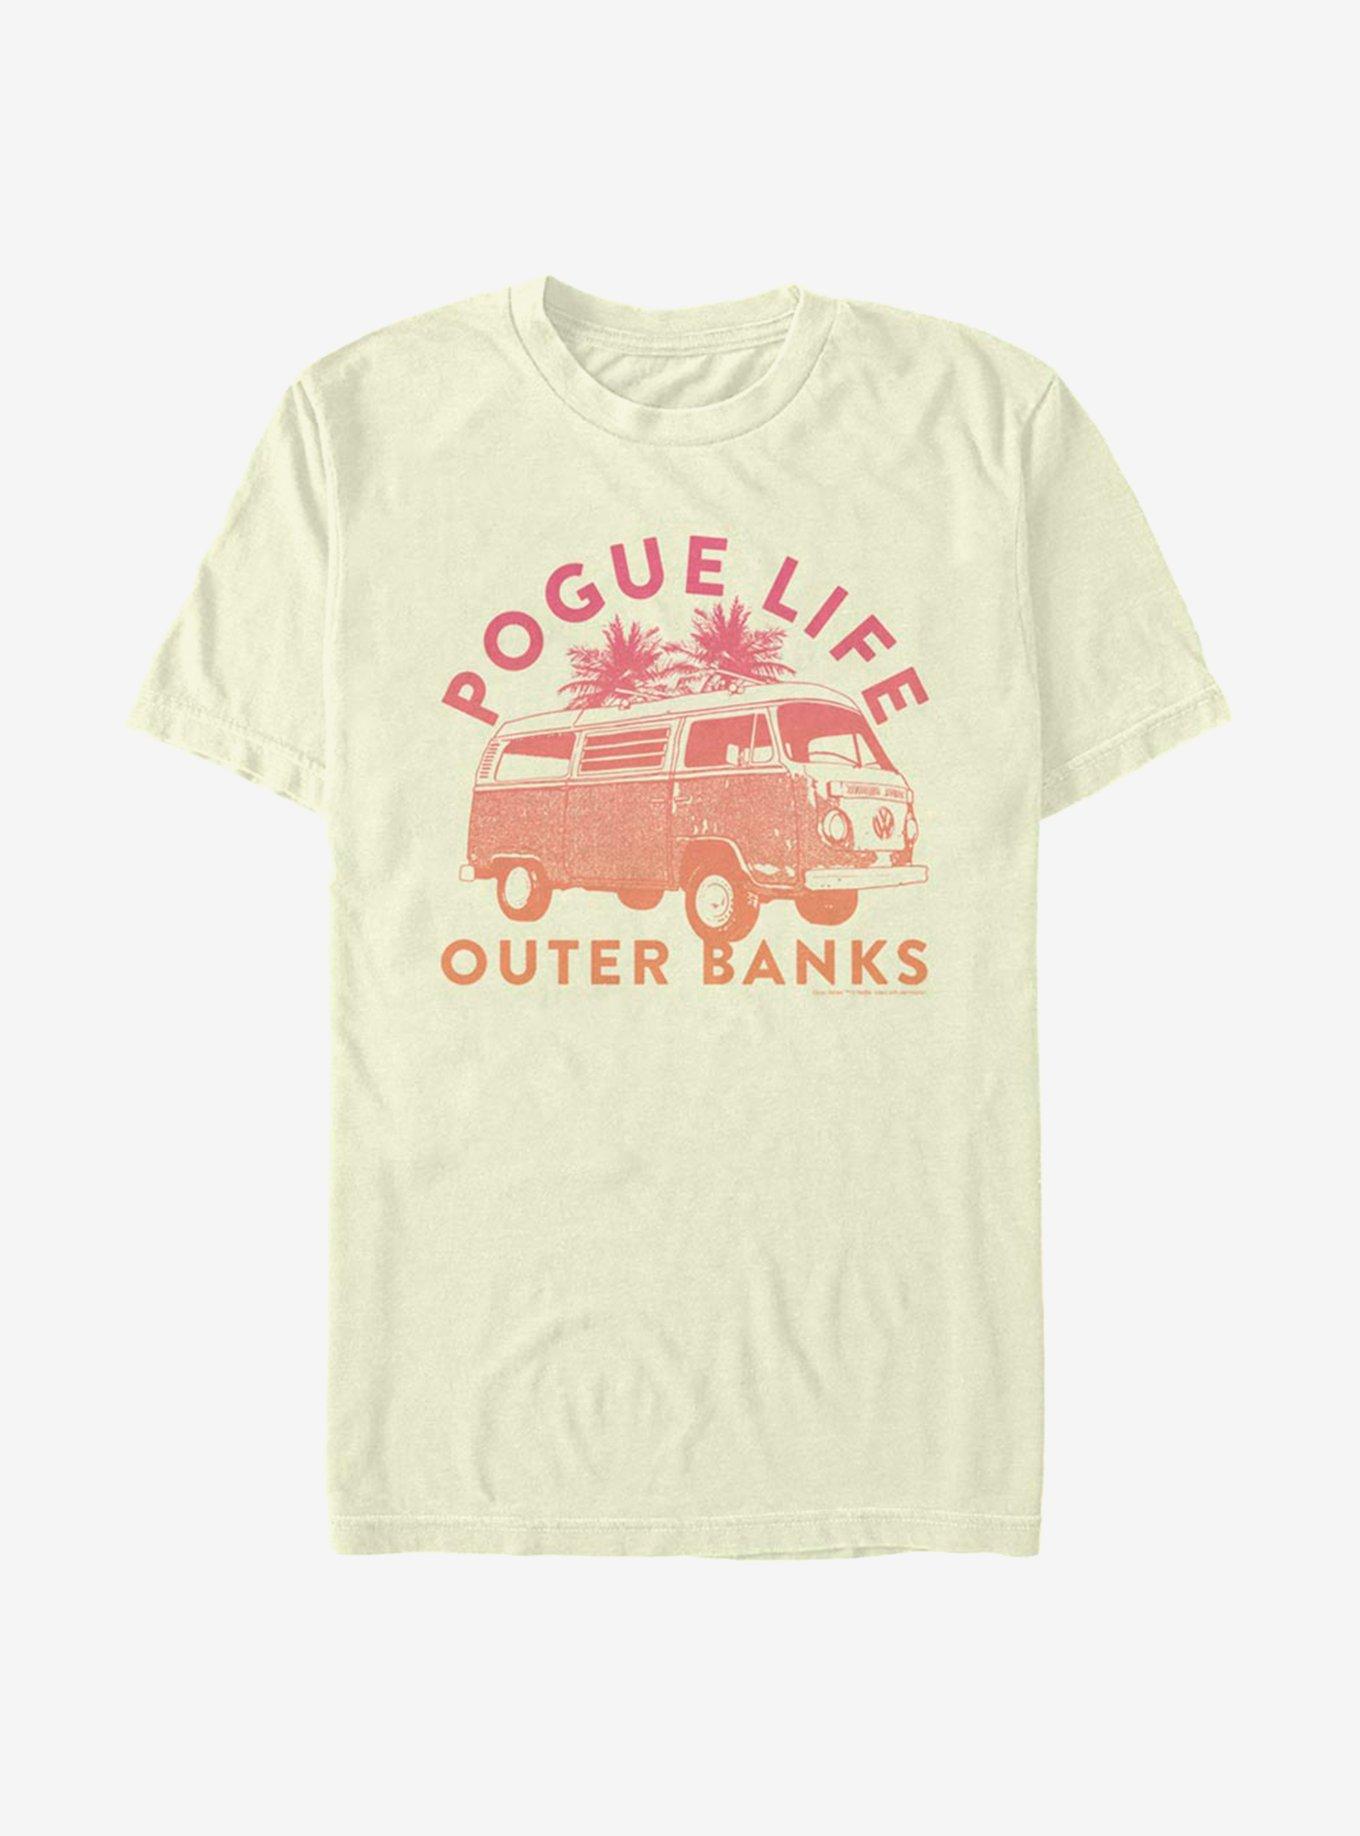 Outer Banks Pogue Life T-Shirt, NATURAL, hi-res